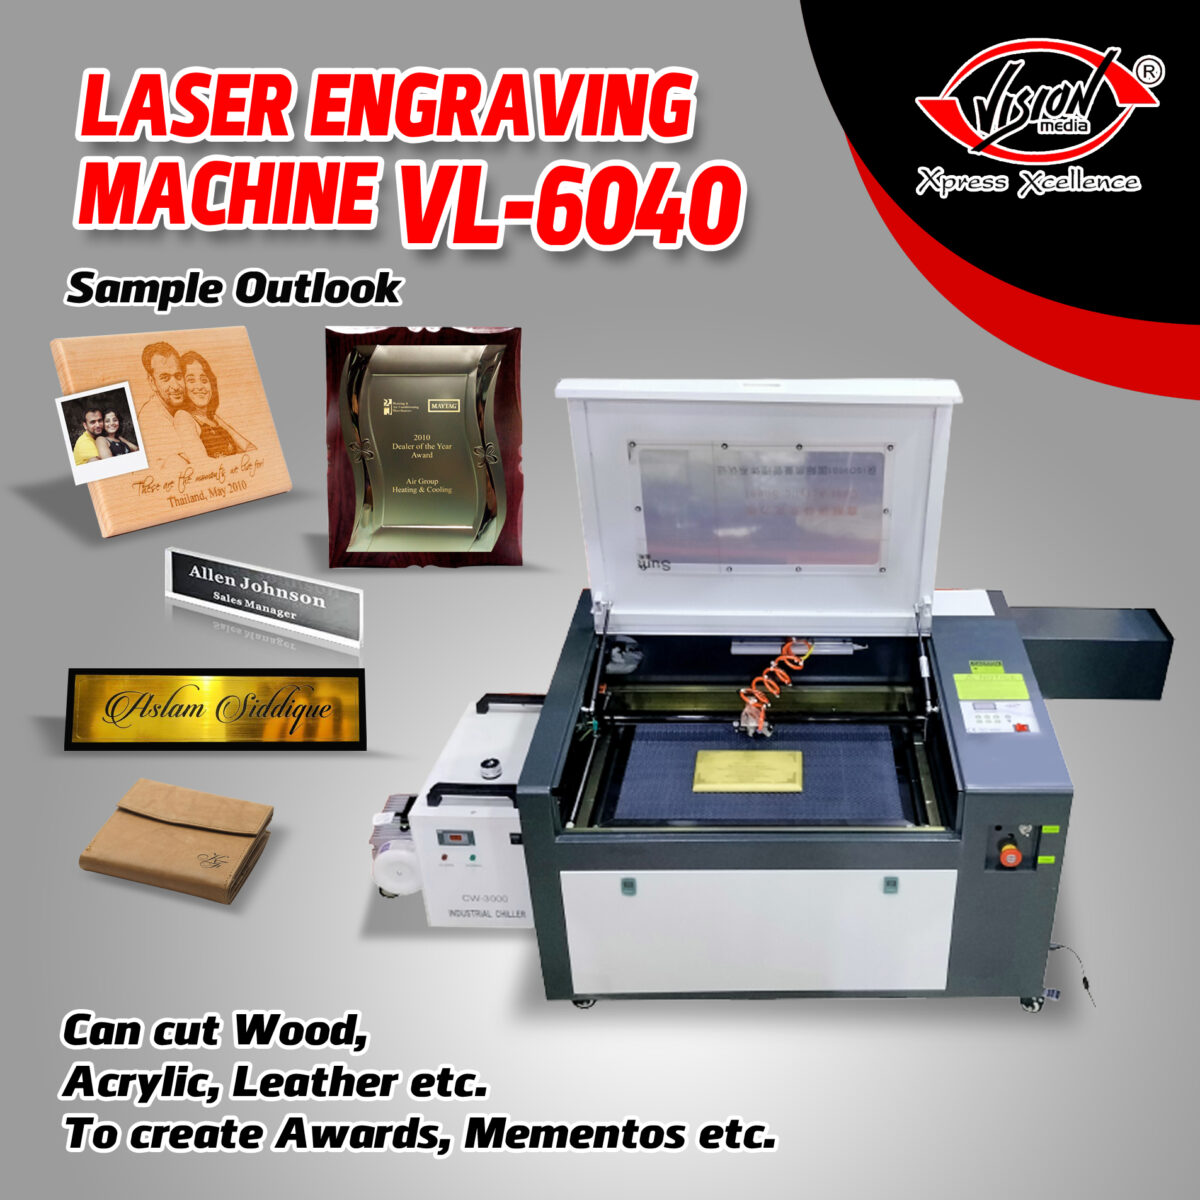 VL-6040 Laser Engraving & Cutting Machine